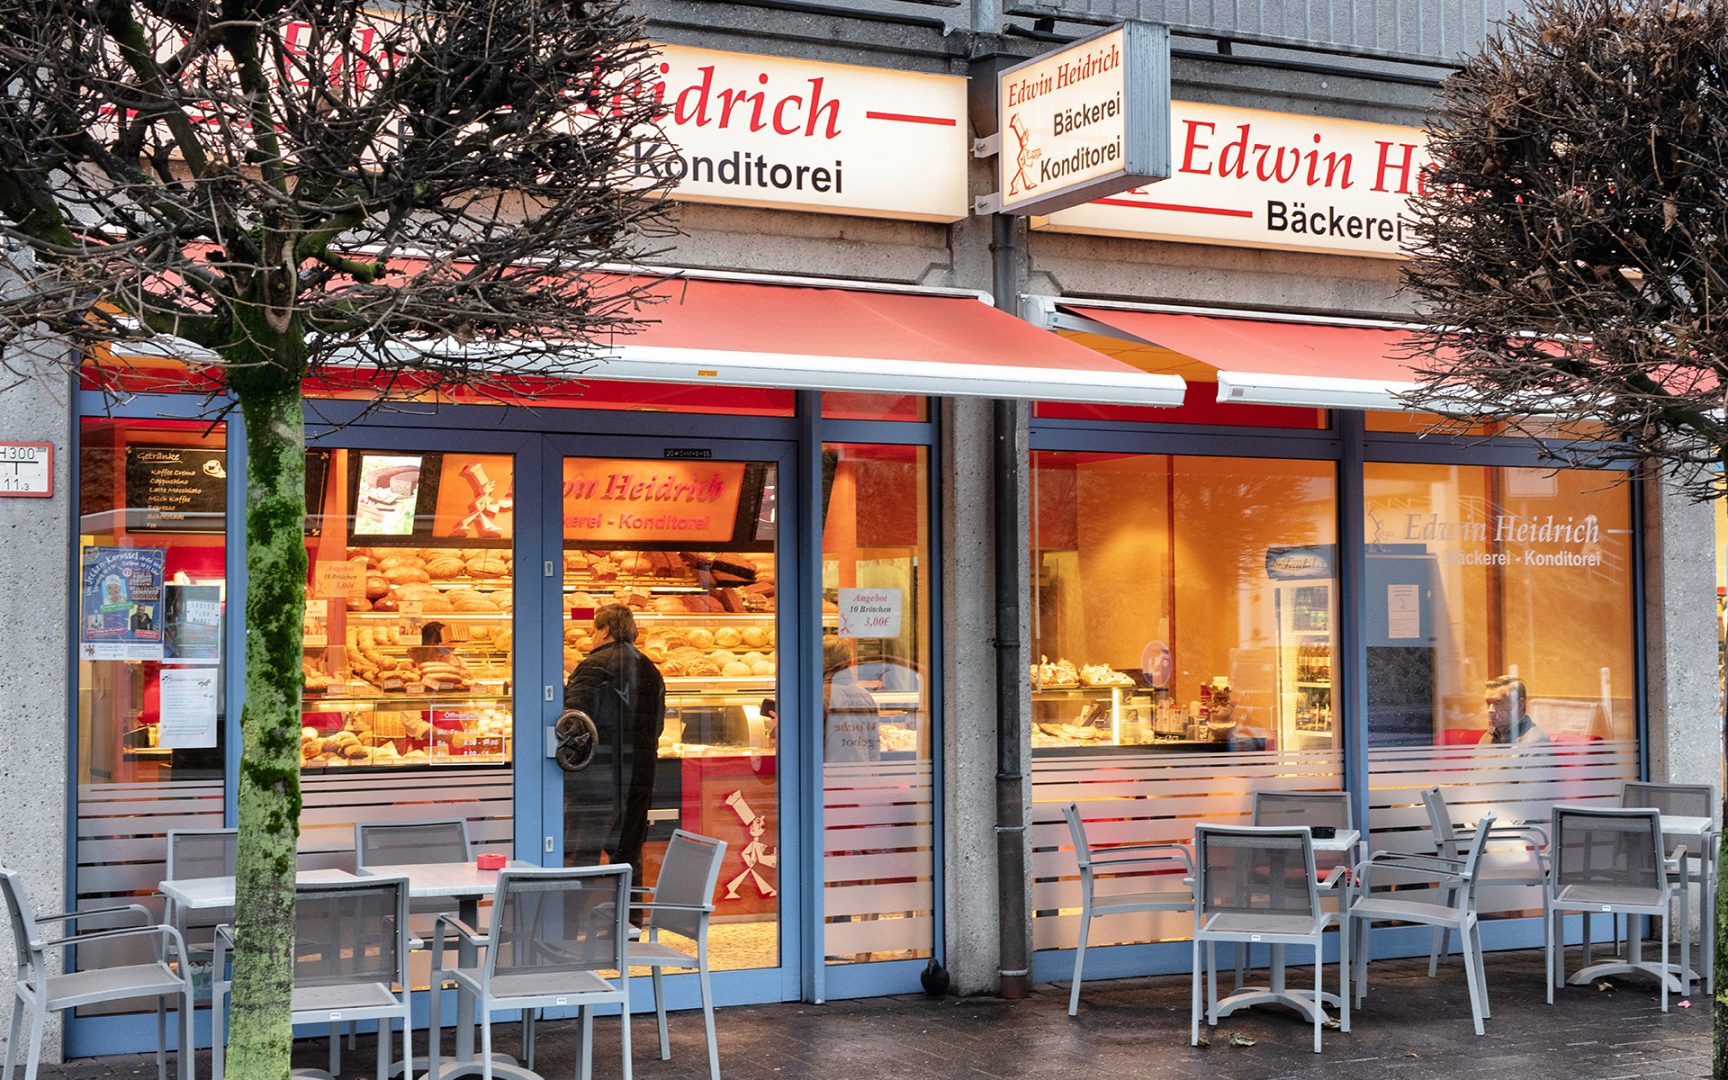 Herzlich Willkommen in den Filialen der Edwin Heidrich Bäckerei-Konditorei